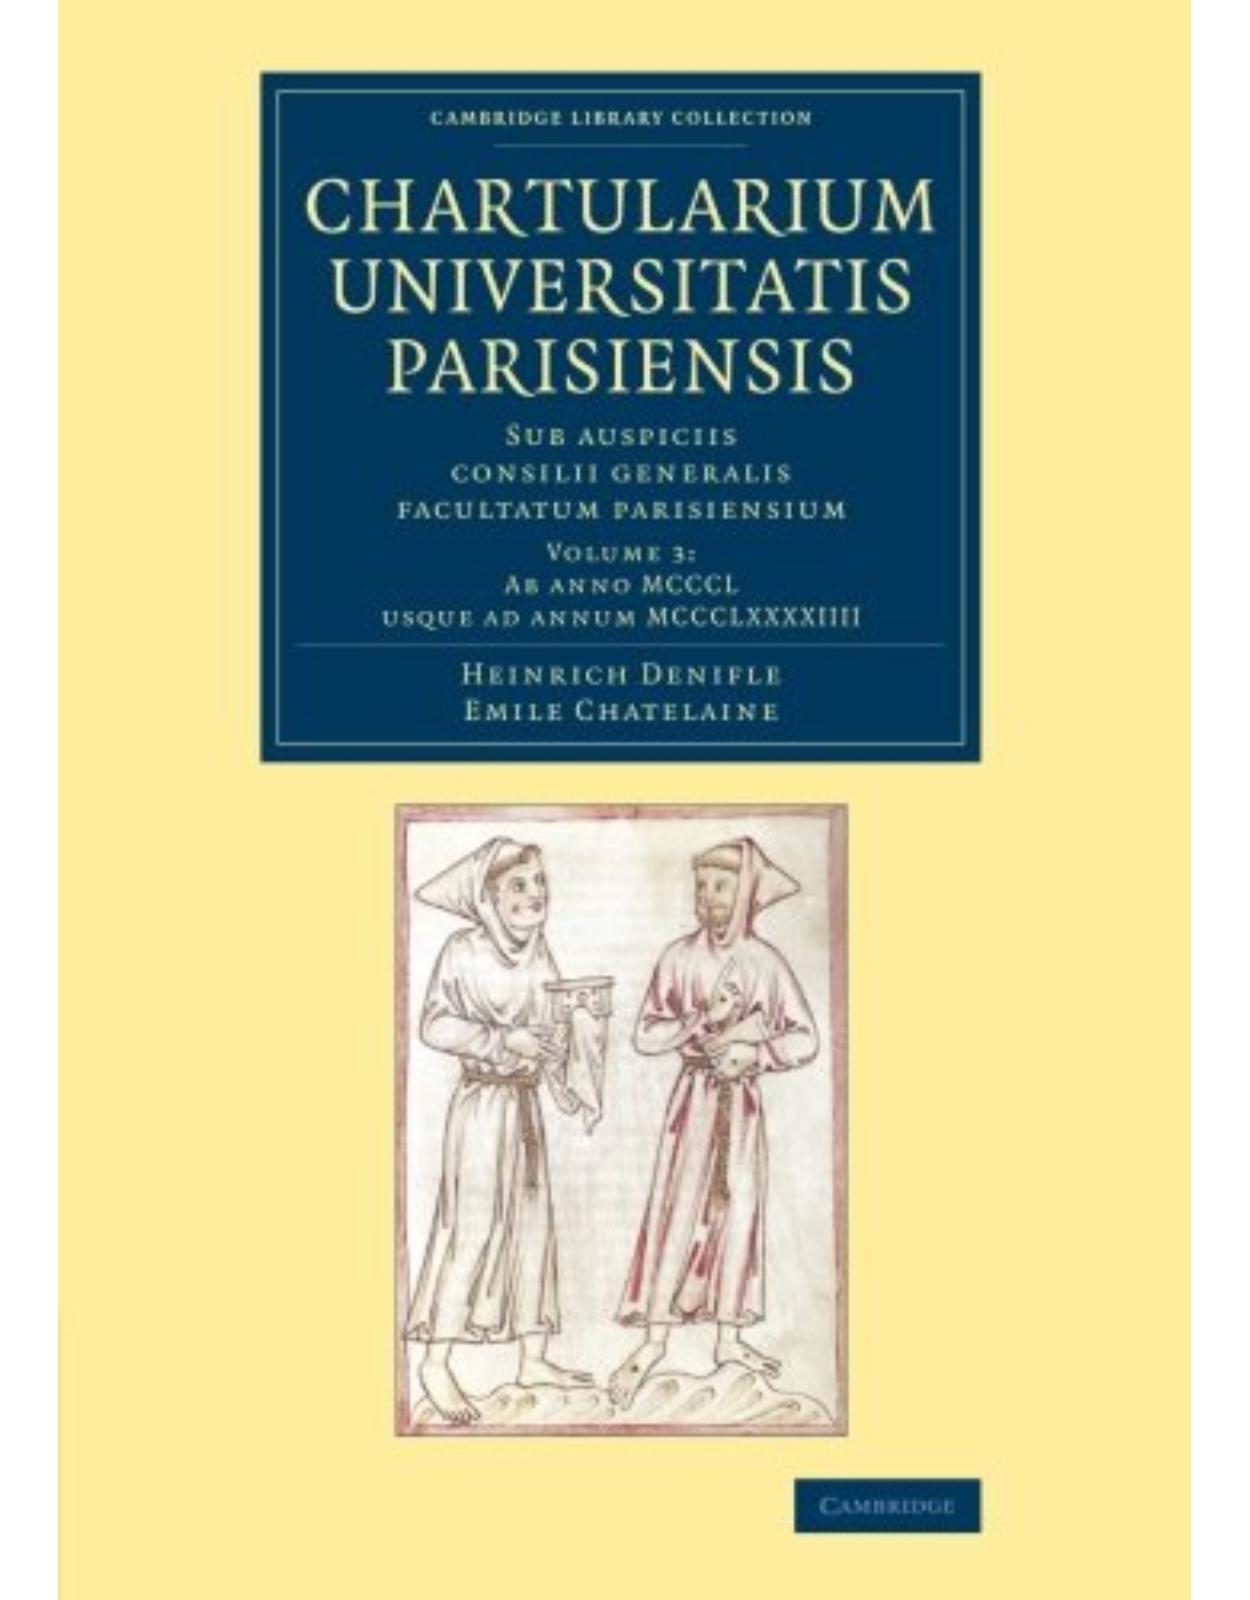 Chartularium Universitatis Parisiensis: Volume 3, Ab anno MCCCL usque ad annum MCCCLXXXXIIII: Sub auspiciis consilii generalis facultatum parisiensium (Cambridge Library Collection - Medieval History)